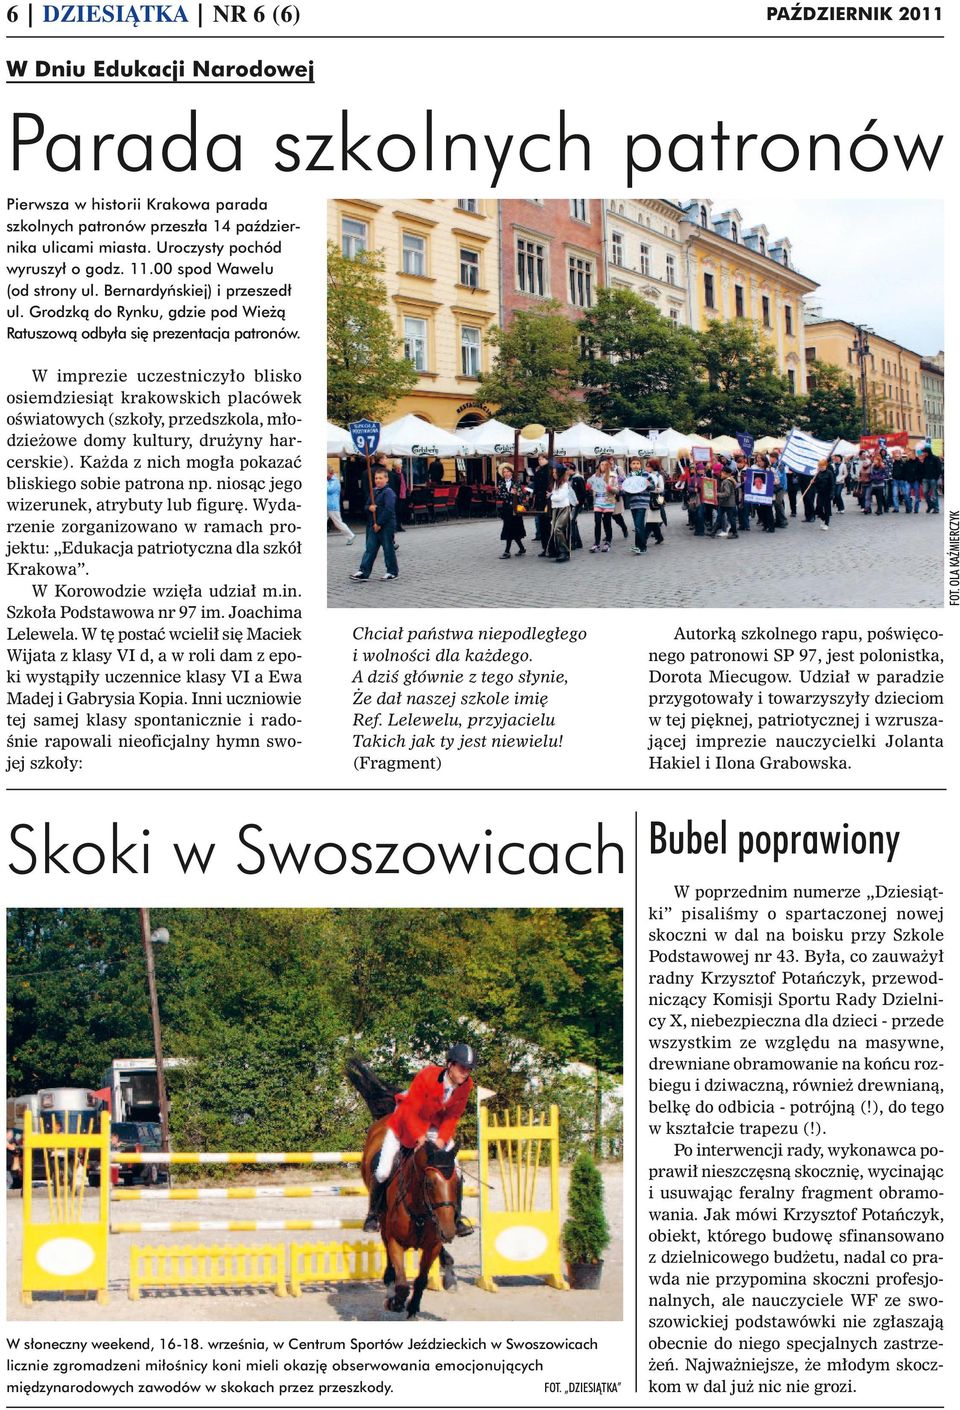 Wydarzenie zorganizowano w ramach projektu: Edukacja patriotyczna dla szkół Krakowa. W Korowodzie wzięła udział m.in. Szkoła Podstawowa nr 97 im. Joachima Lelewela.